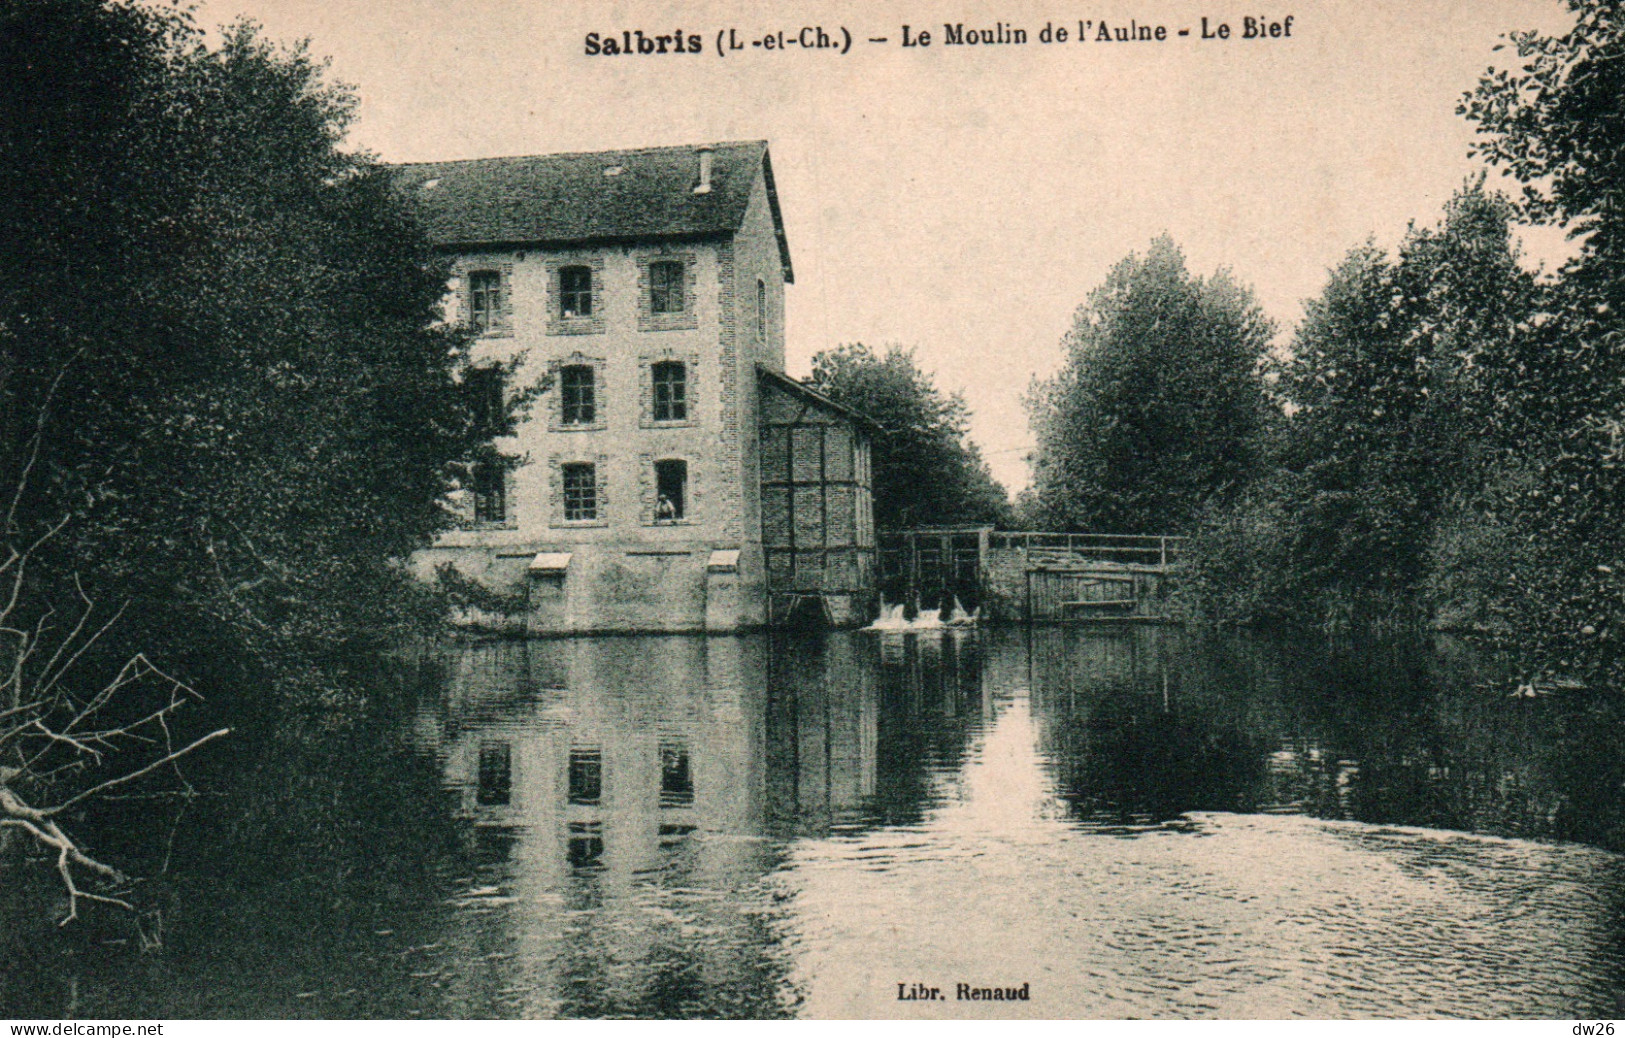 Moulins à Eau - Salbris (Loir-et-Cher) Le Moulin De L'Aulne, Le Bief - Librairie Renaud - Carte Non Circulée - Water Mills